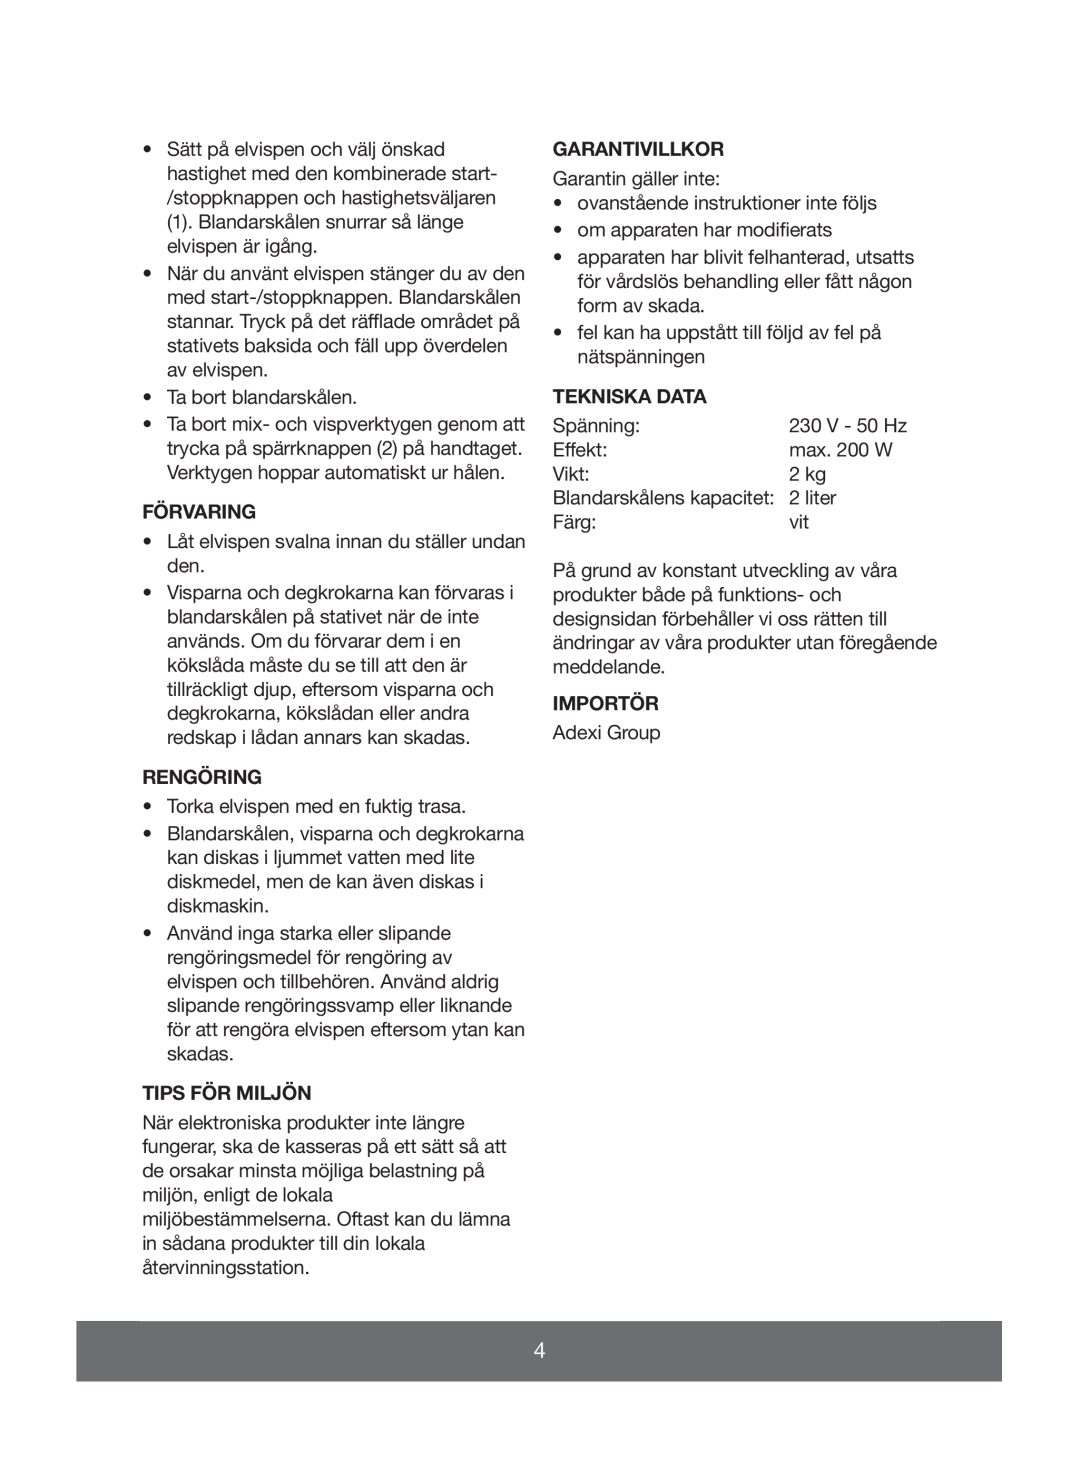 Melissa 646-039 manual Förvaring, Rengöring, Tips För Miljön, Garantivillkor, Tekniska Data, Importör 